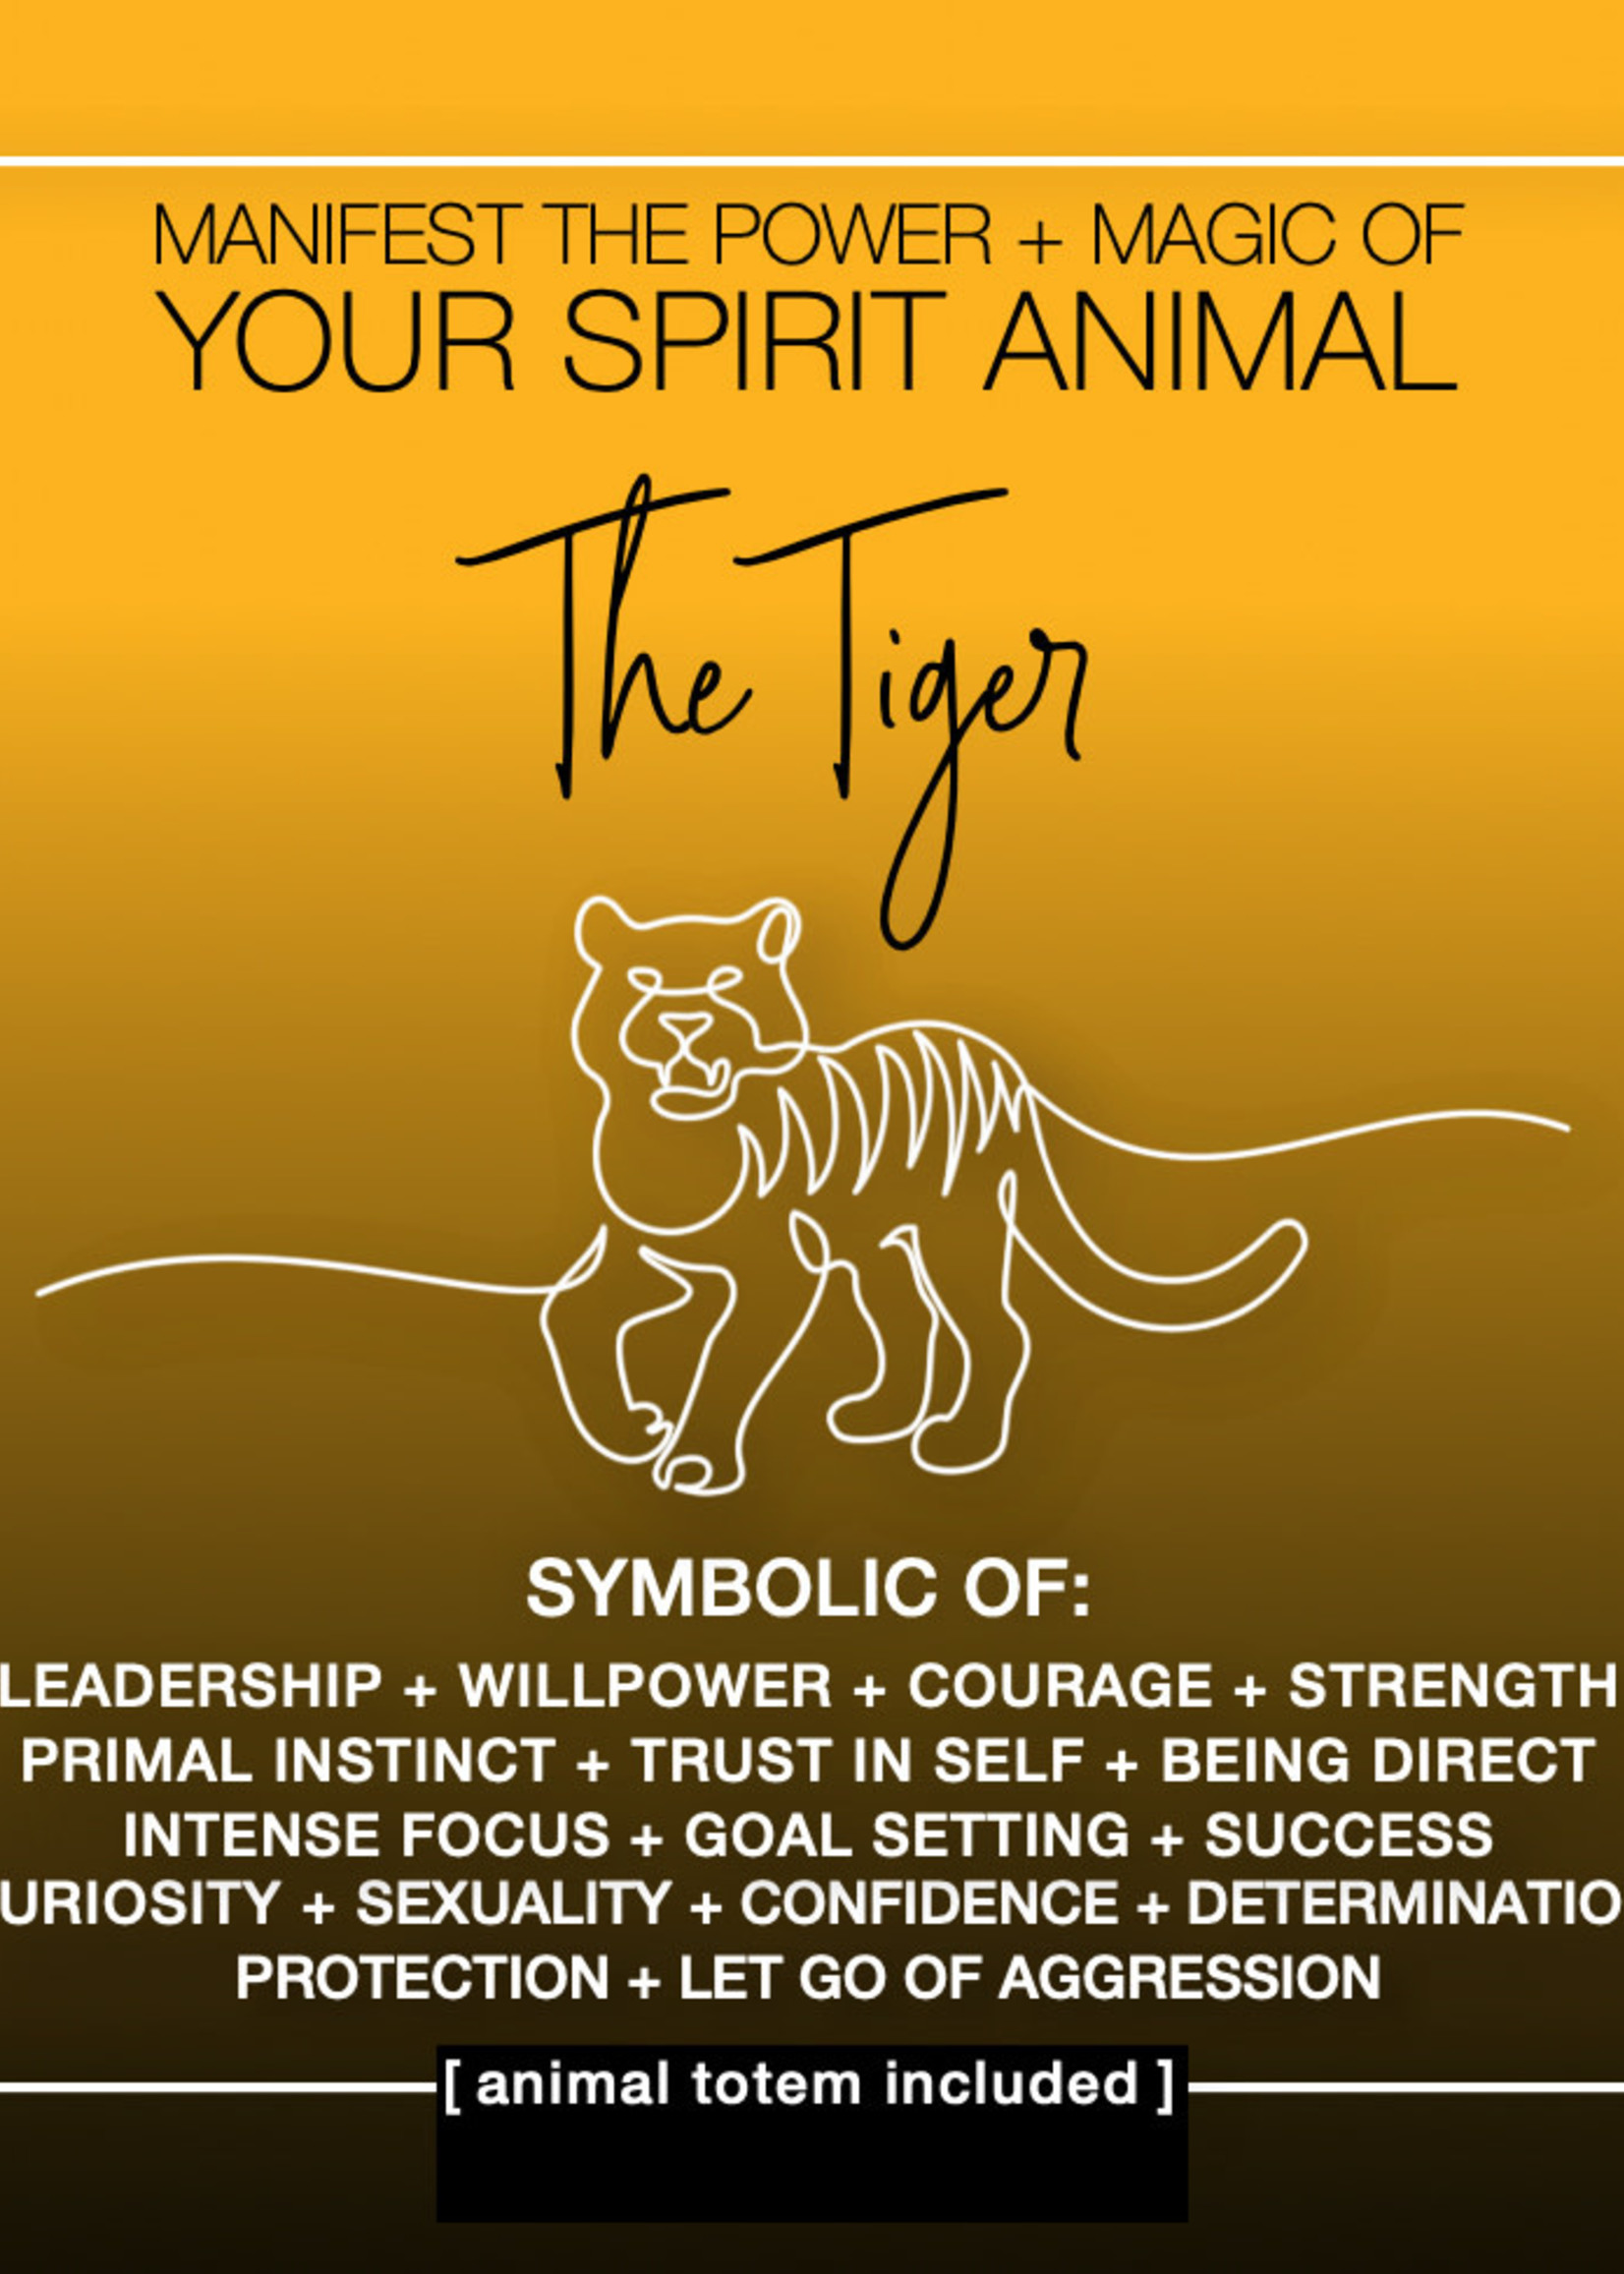 SPIRIT ANIMAL CARD: TIGER